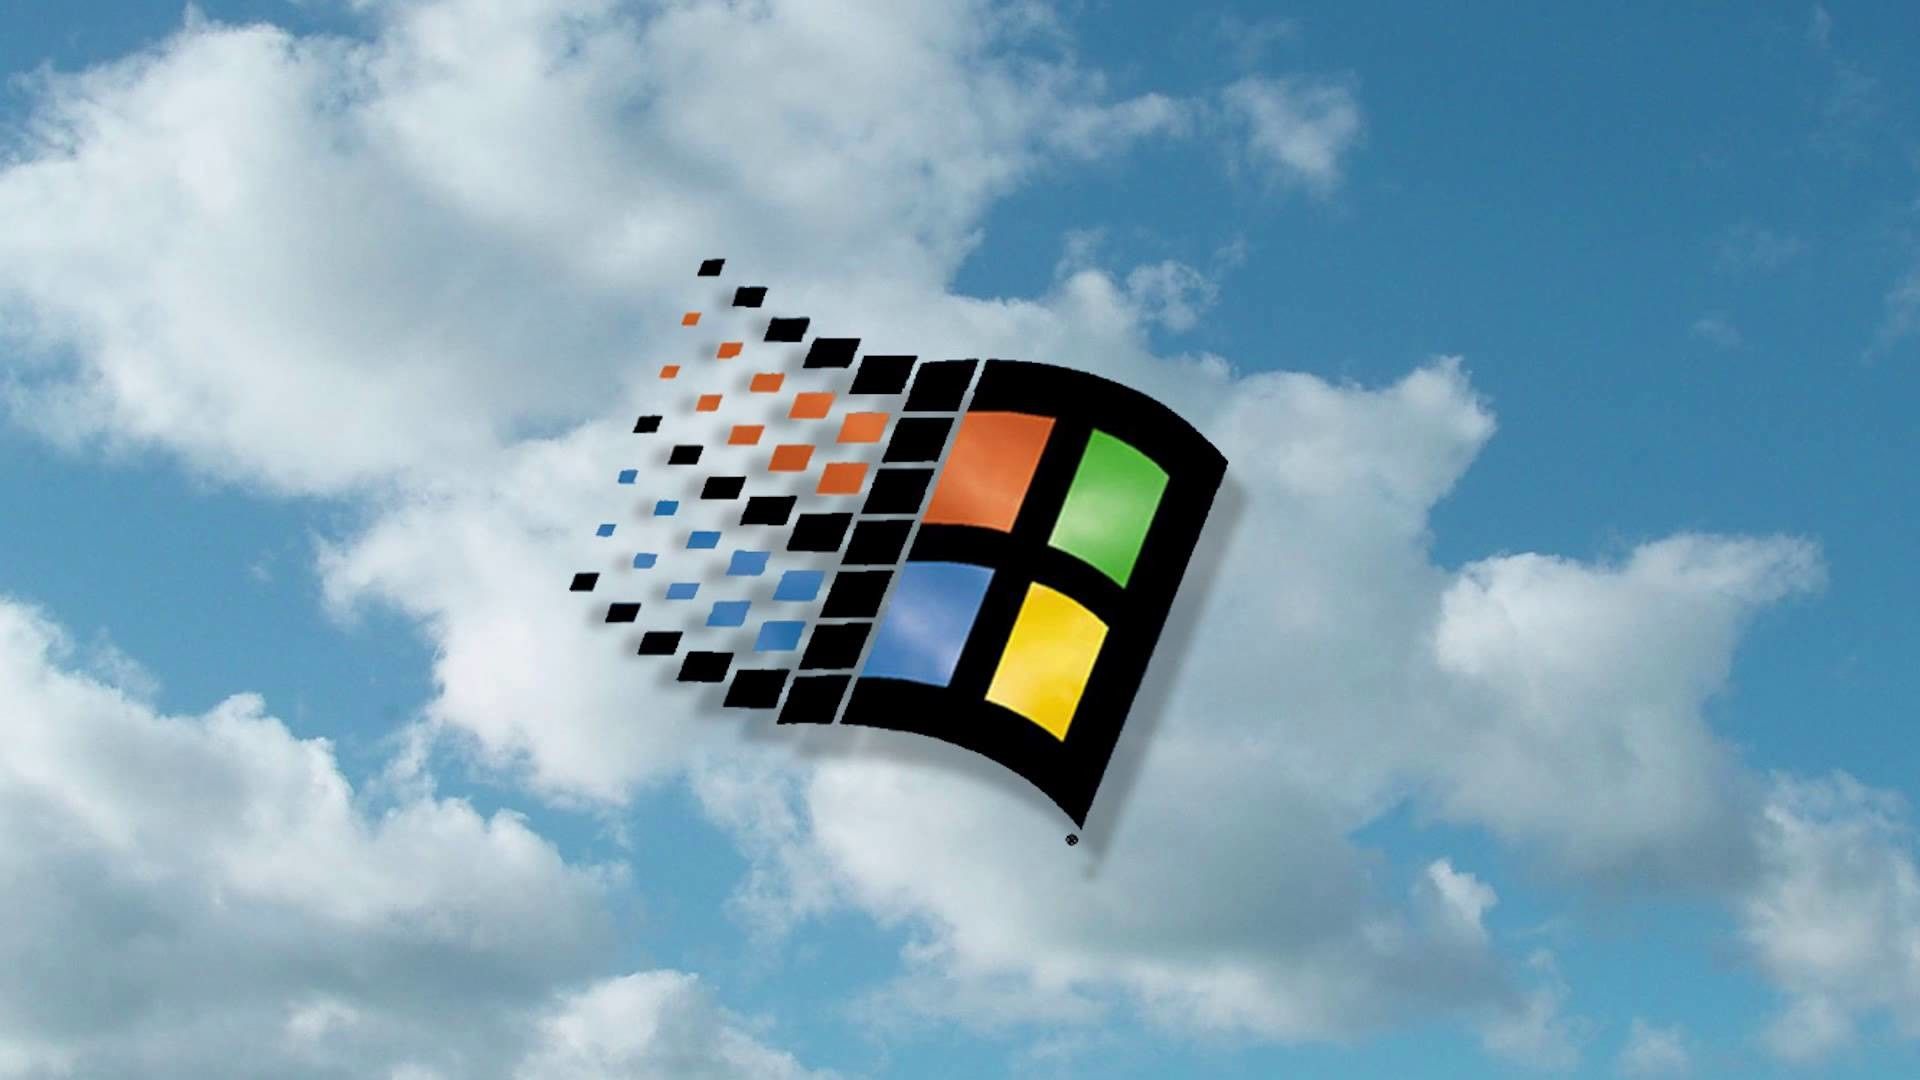 Nếu bạn đang tìm kiếm một bức ảnh hình nền độc đáo để thay đổi không gian làm việc của mình, hãy ghé thăm WallpaperDog. Họ cung cấp nhiều tùy chọn hình nền Windows 95 độc đáo và phù hợp với nhiều phong cách.